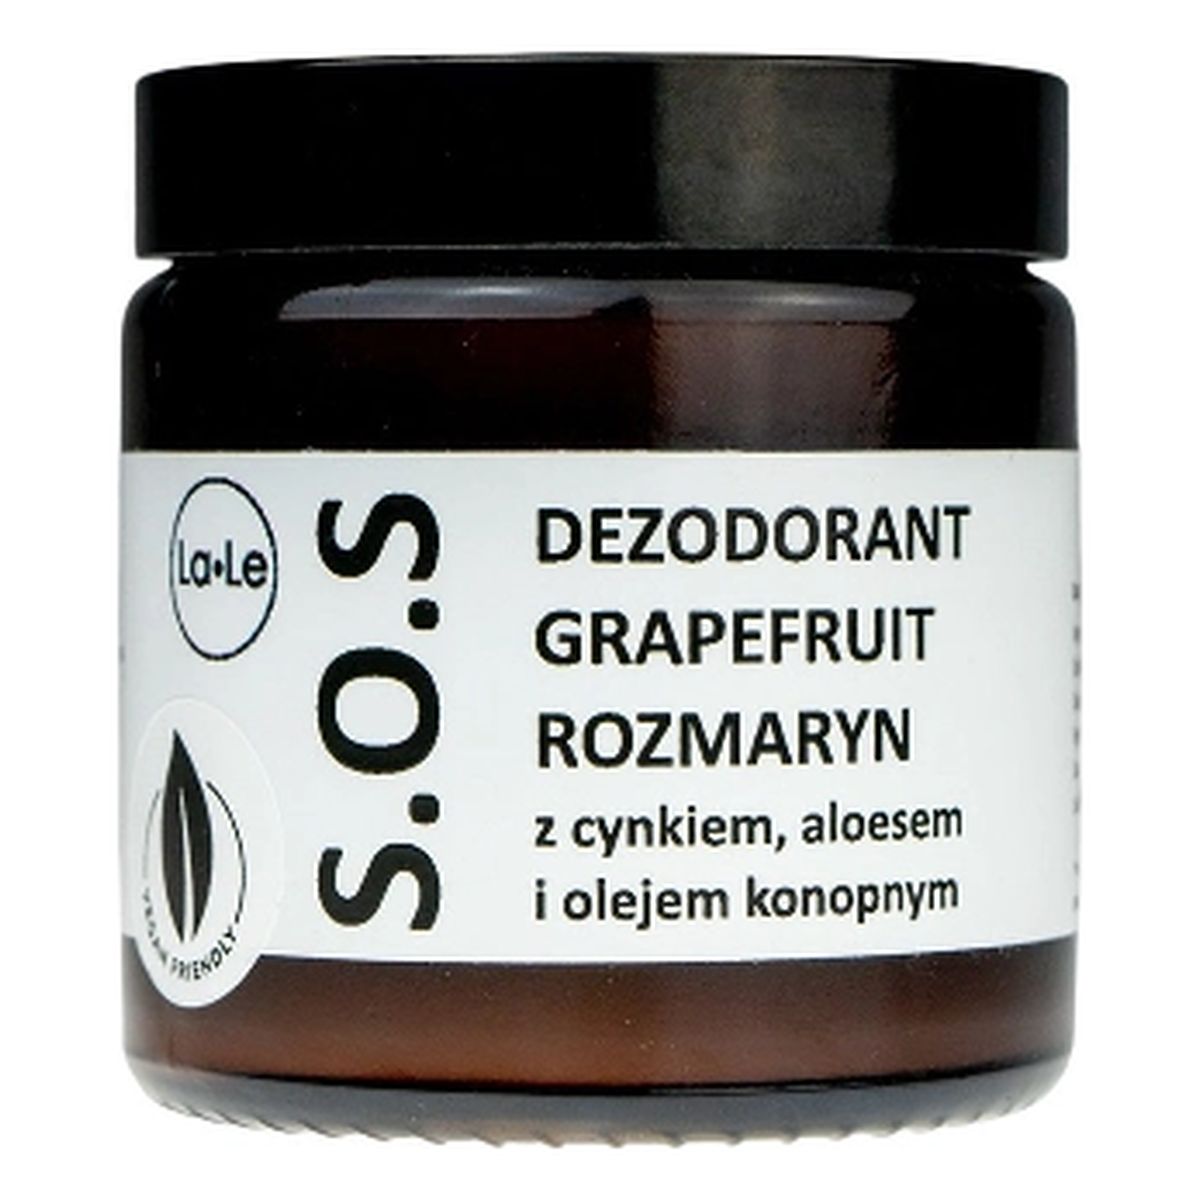 La-Le Dezodorant SOS Grapefruit Rozmaryn 120ml